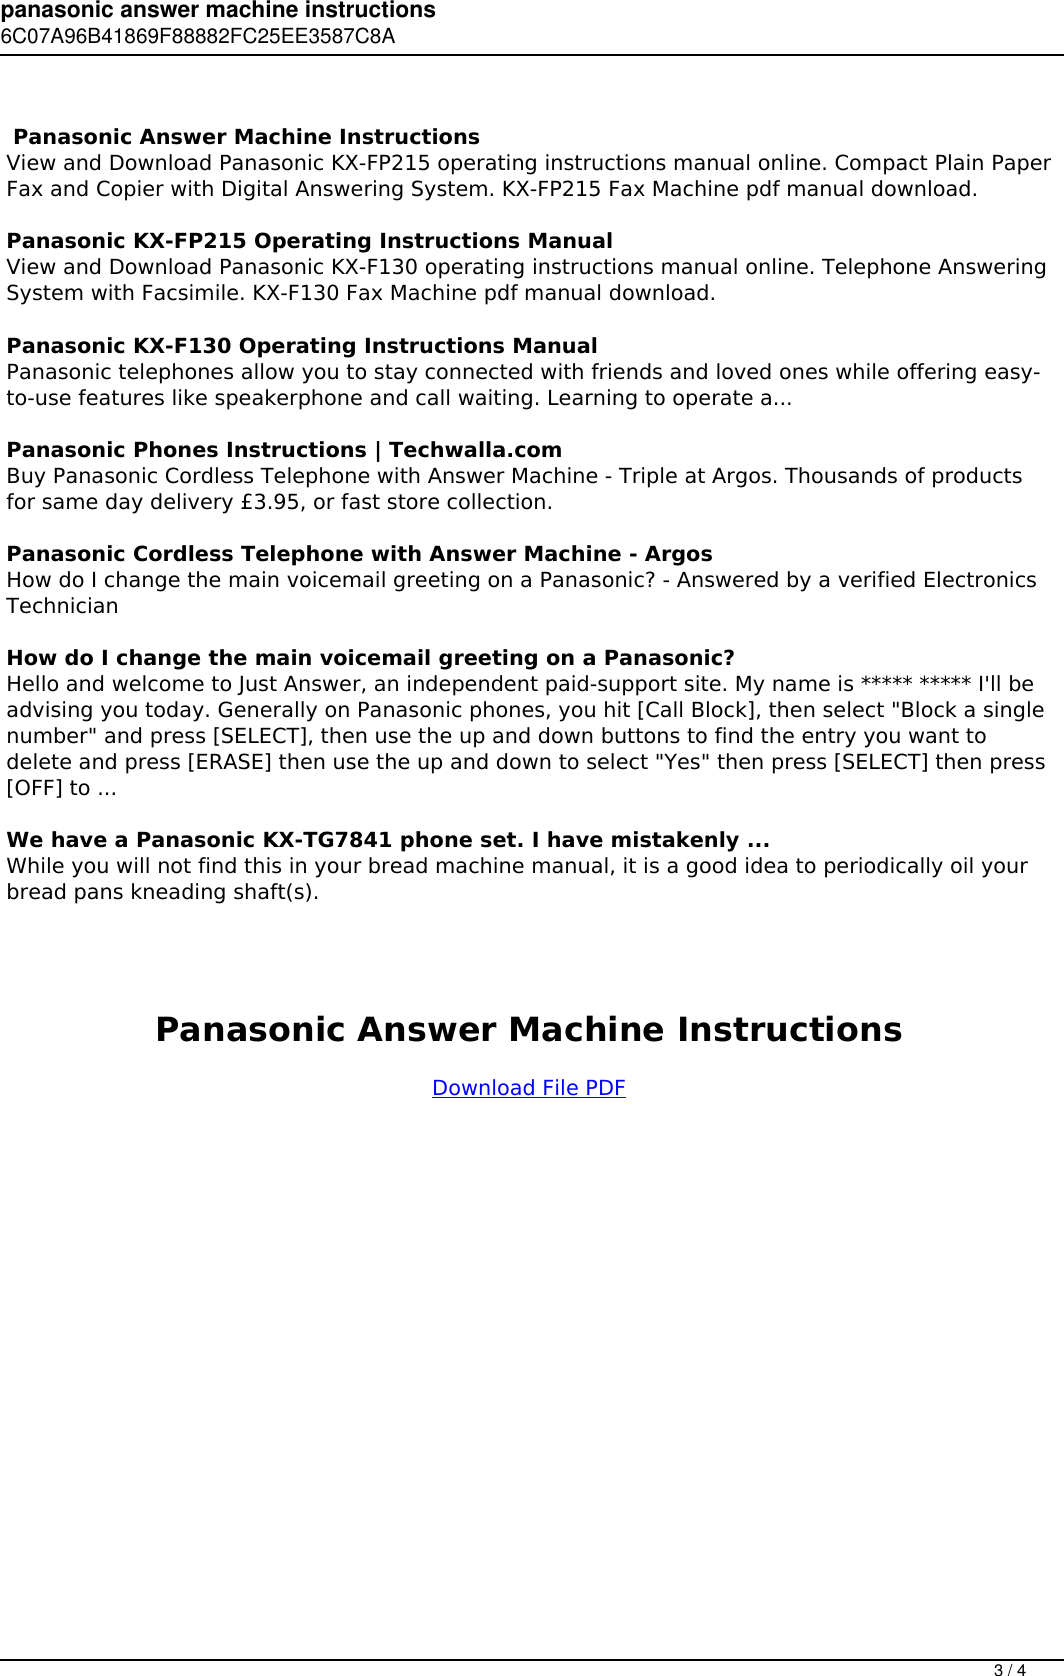 Page 3 of 4 - Panasonic Answer Machine Instructions